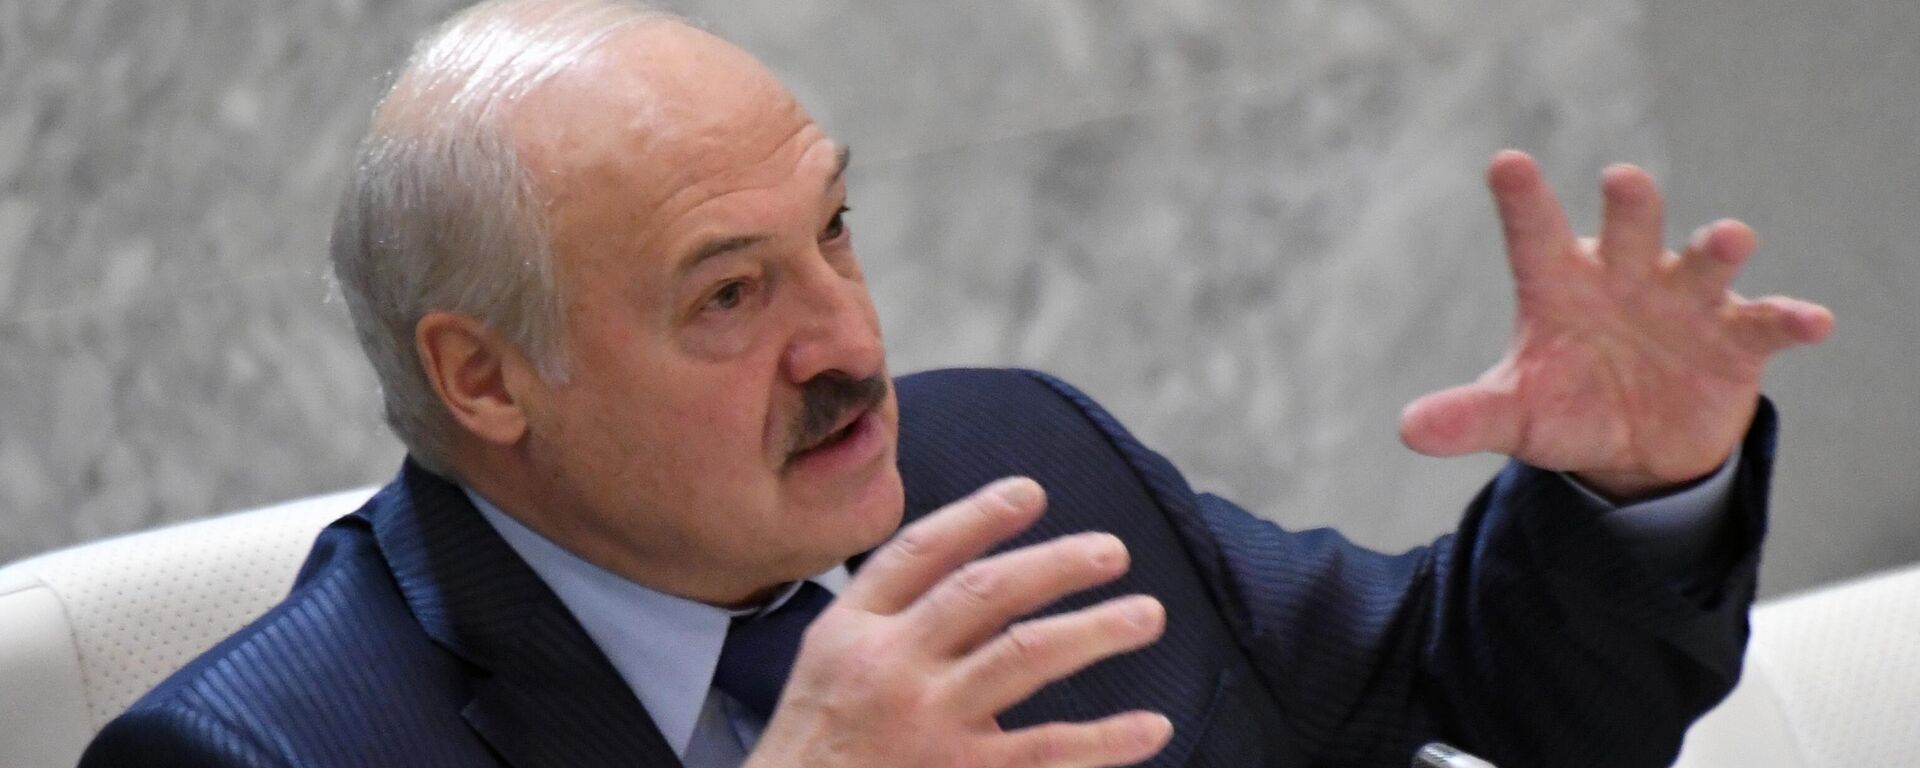 Alexandr Lukashenko, el presidente de Bielorrusia - Sputnik Mundo, 1920, 01.12.2022